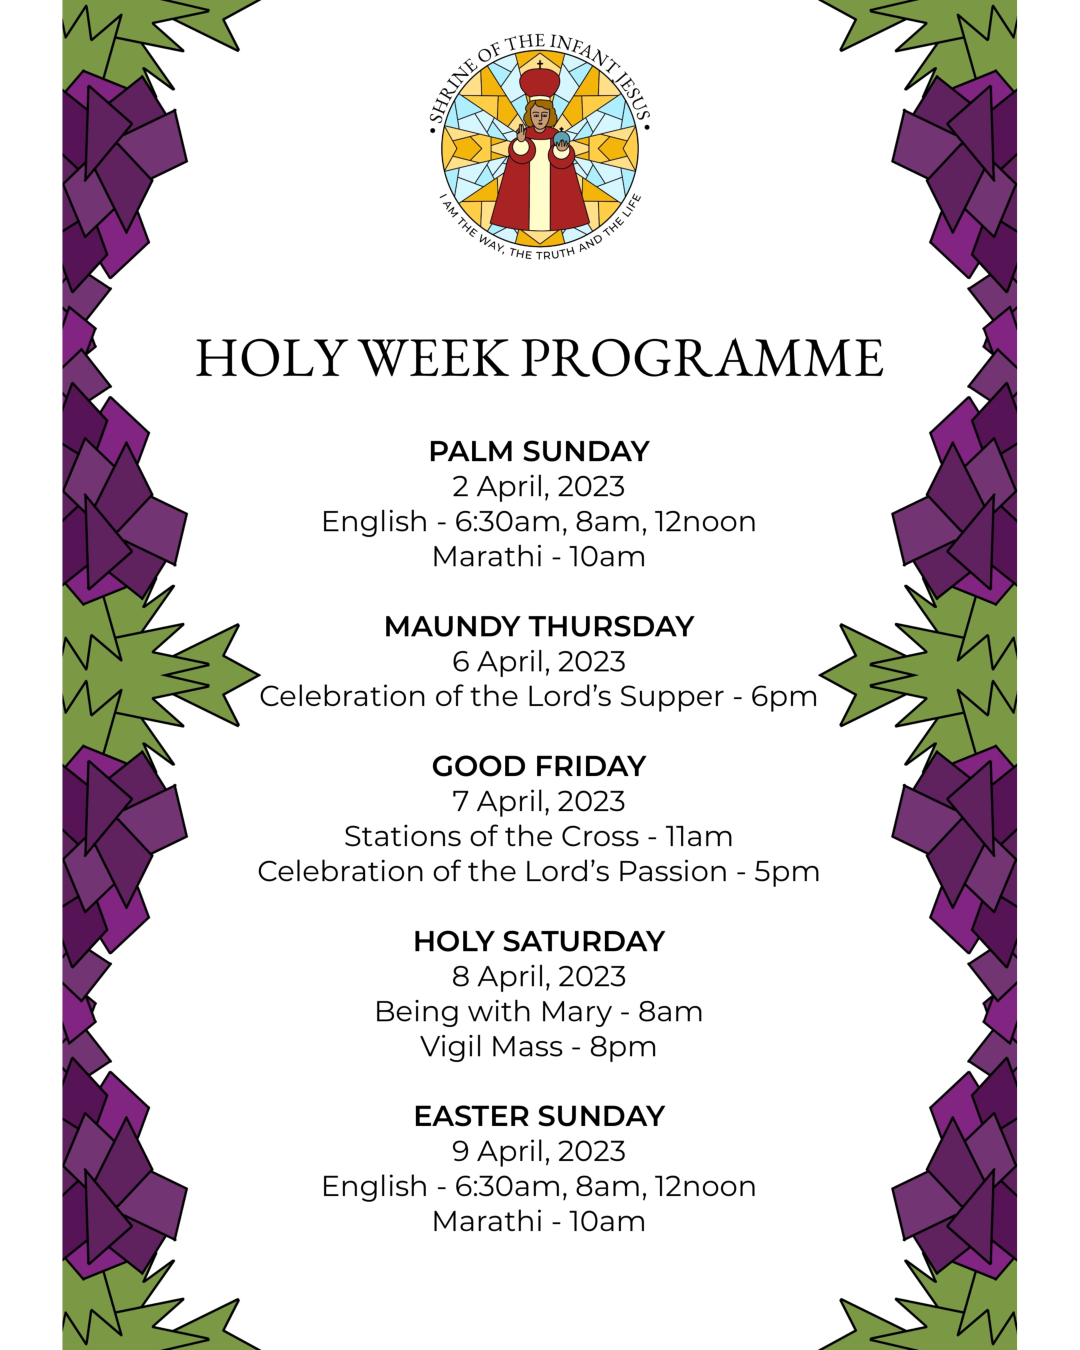 Holy Week Programme - Shrine of the Infant Jesus, Nashik